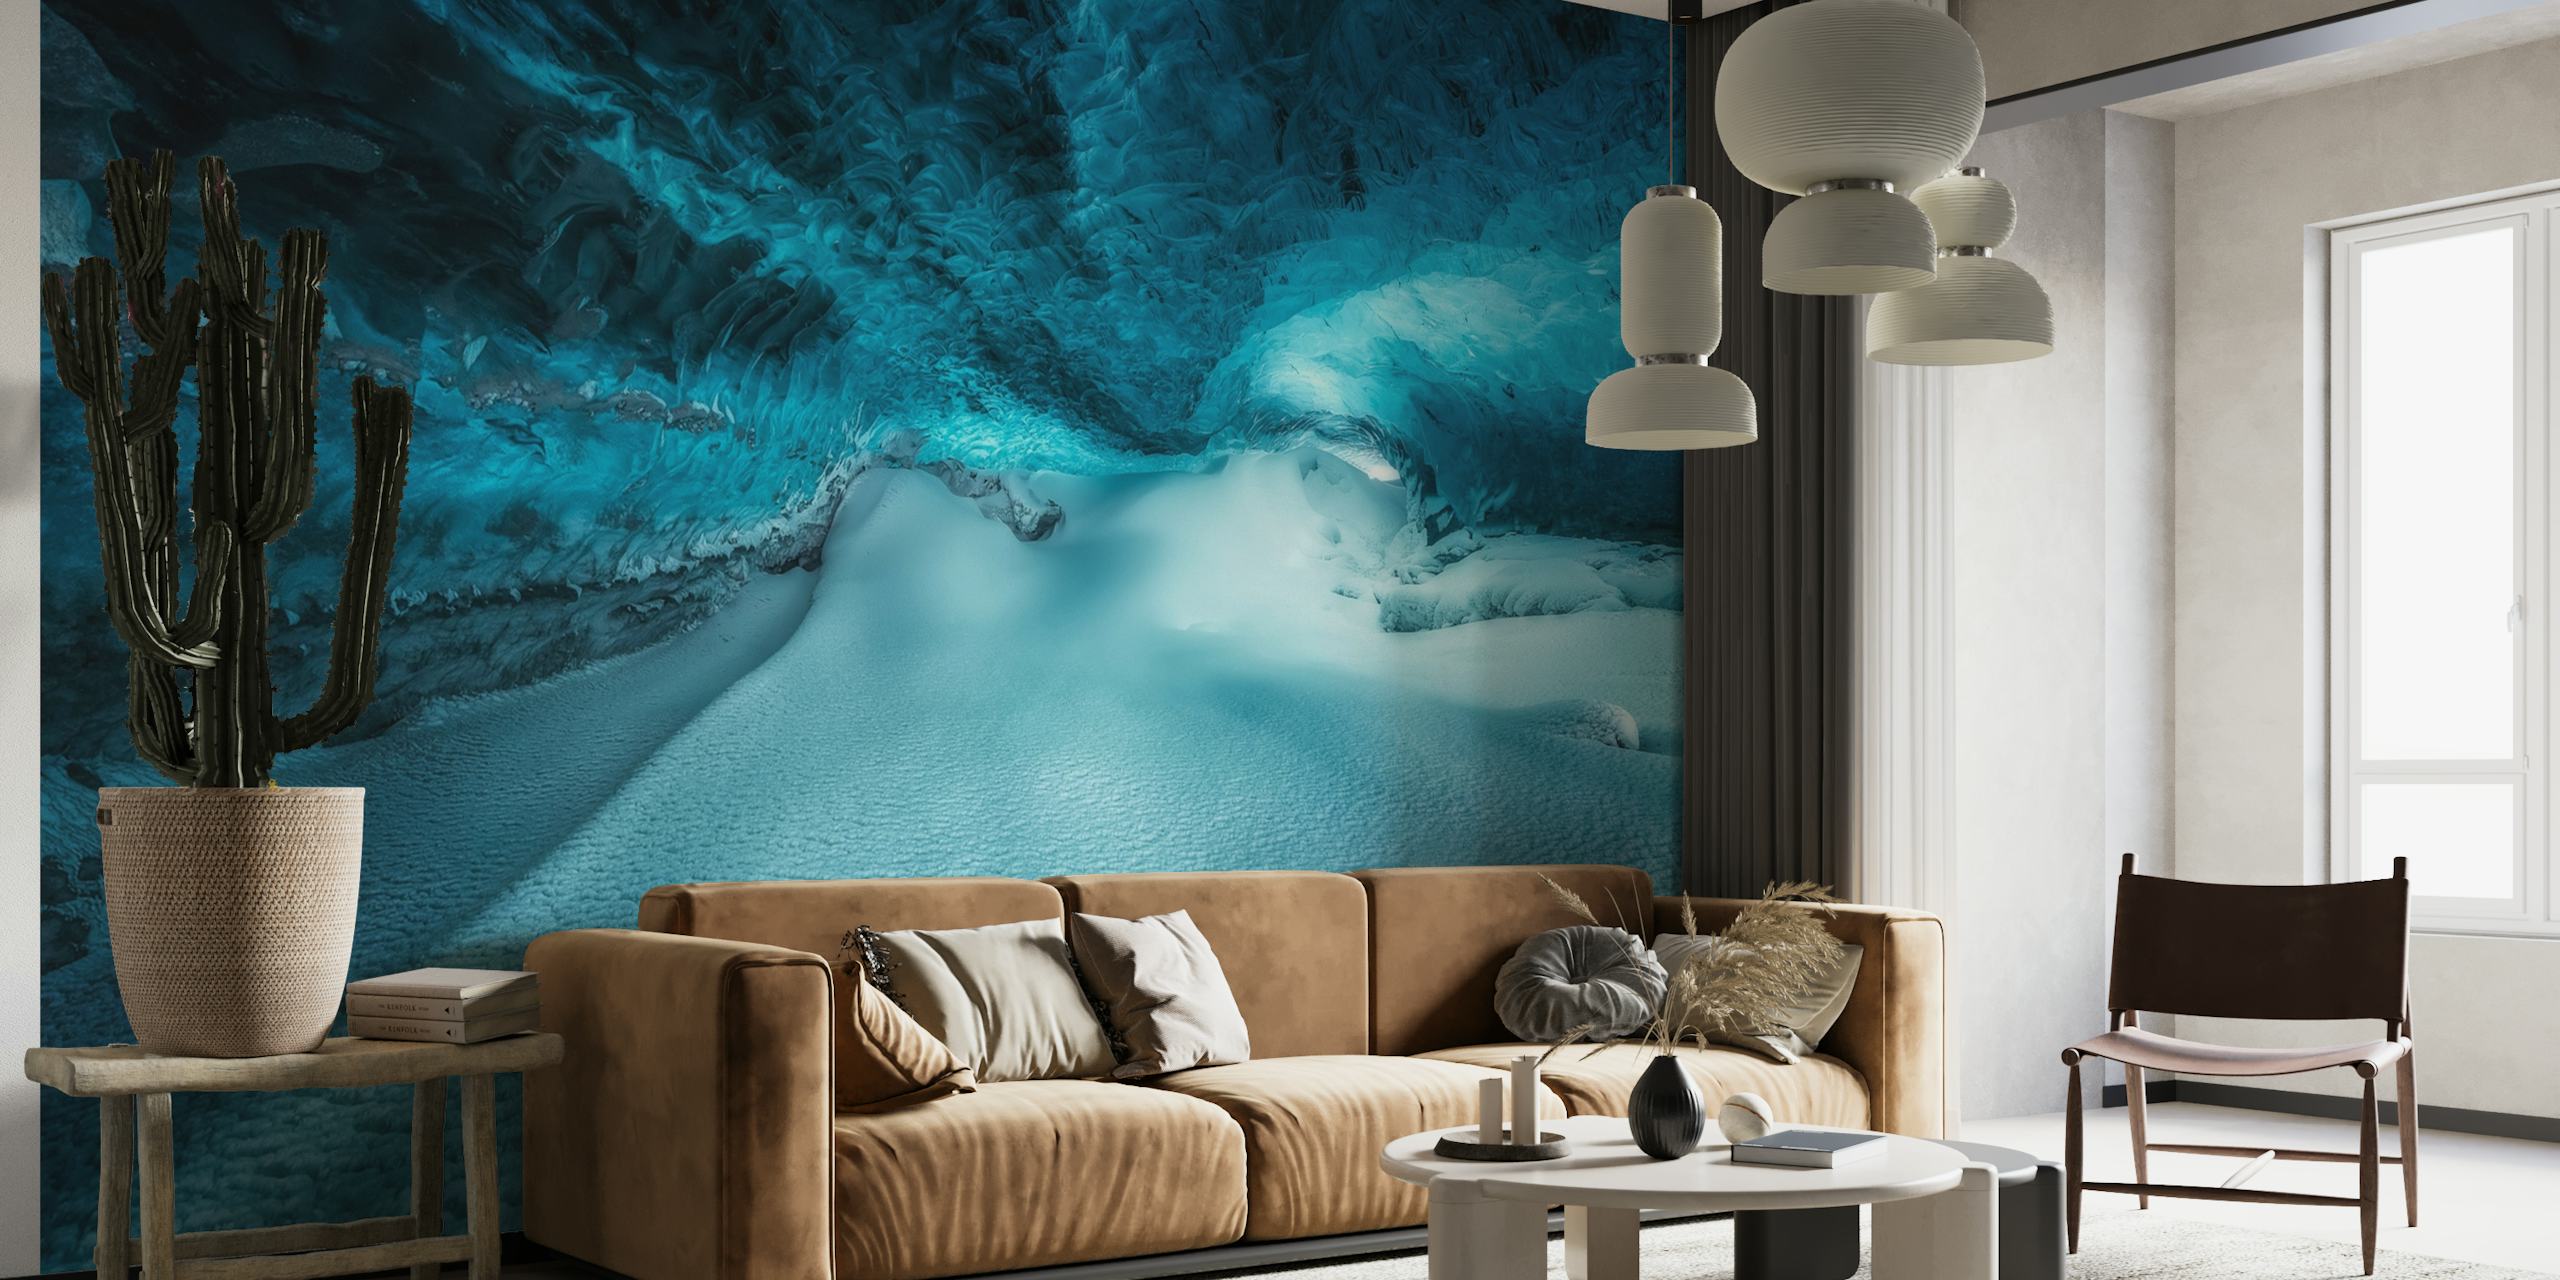 Onderwater ijsgrot muurschildering met blauwe tinten en bevroren texturen